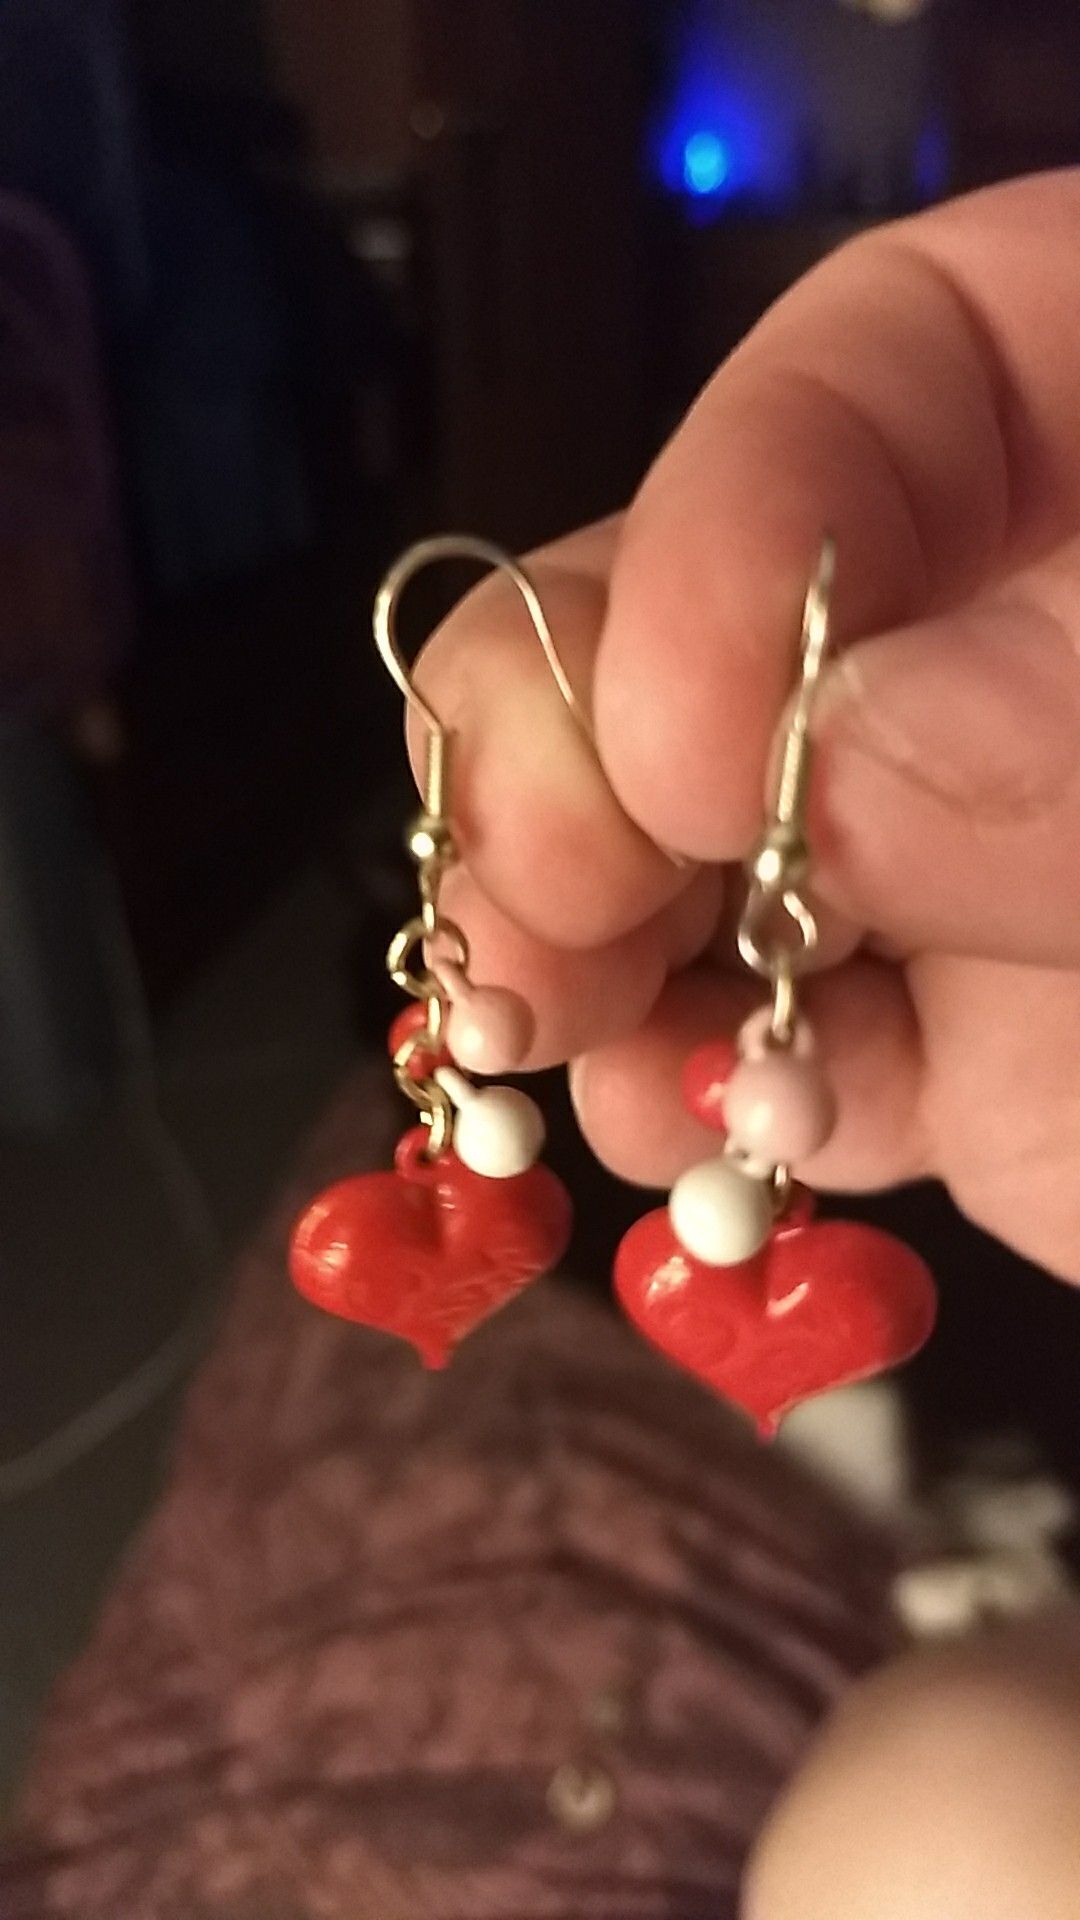 Costume dangly heart earrings